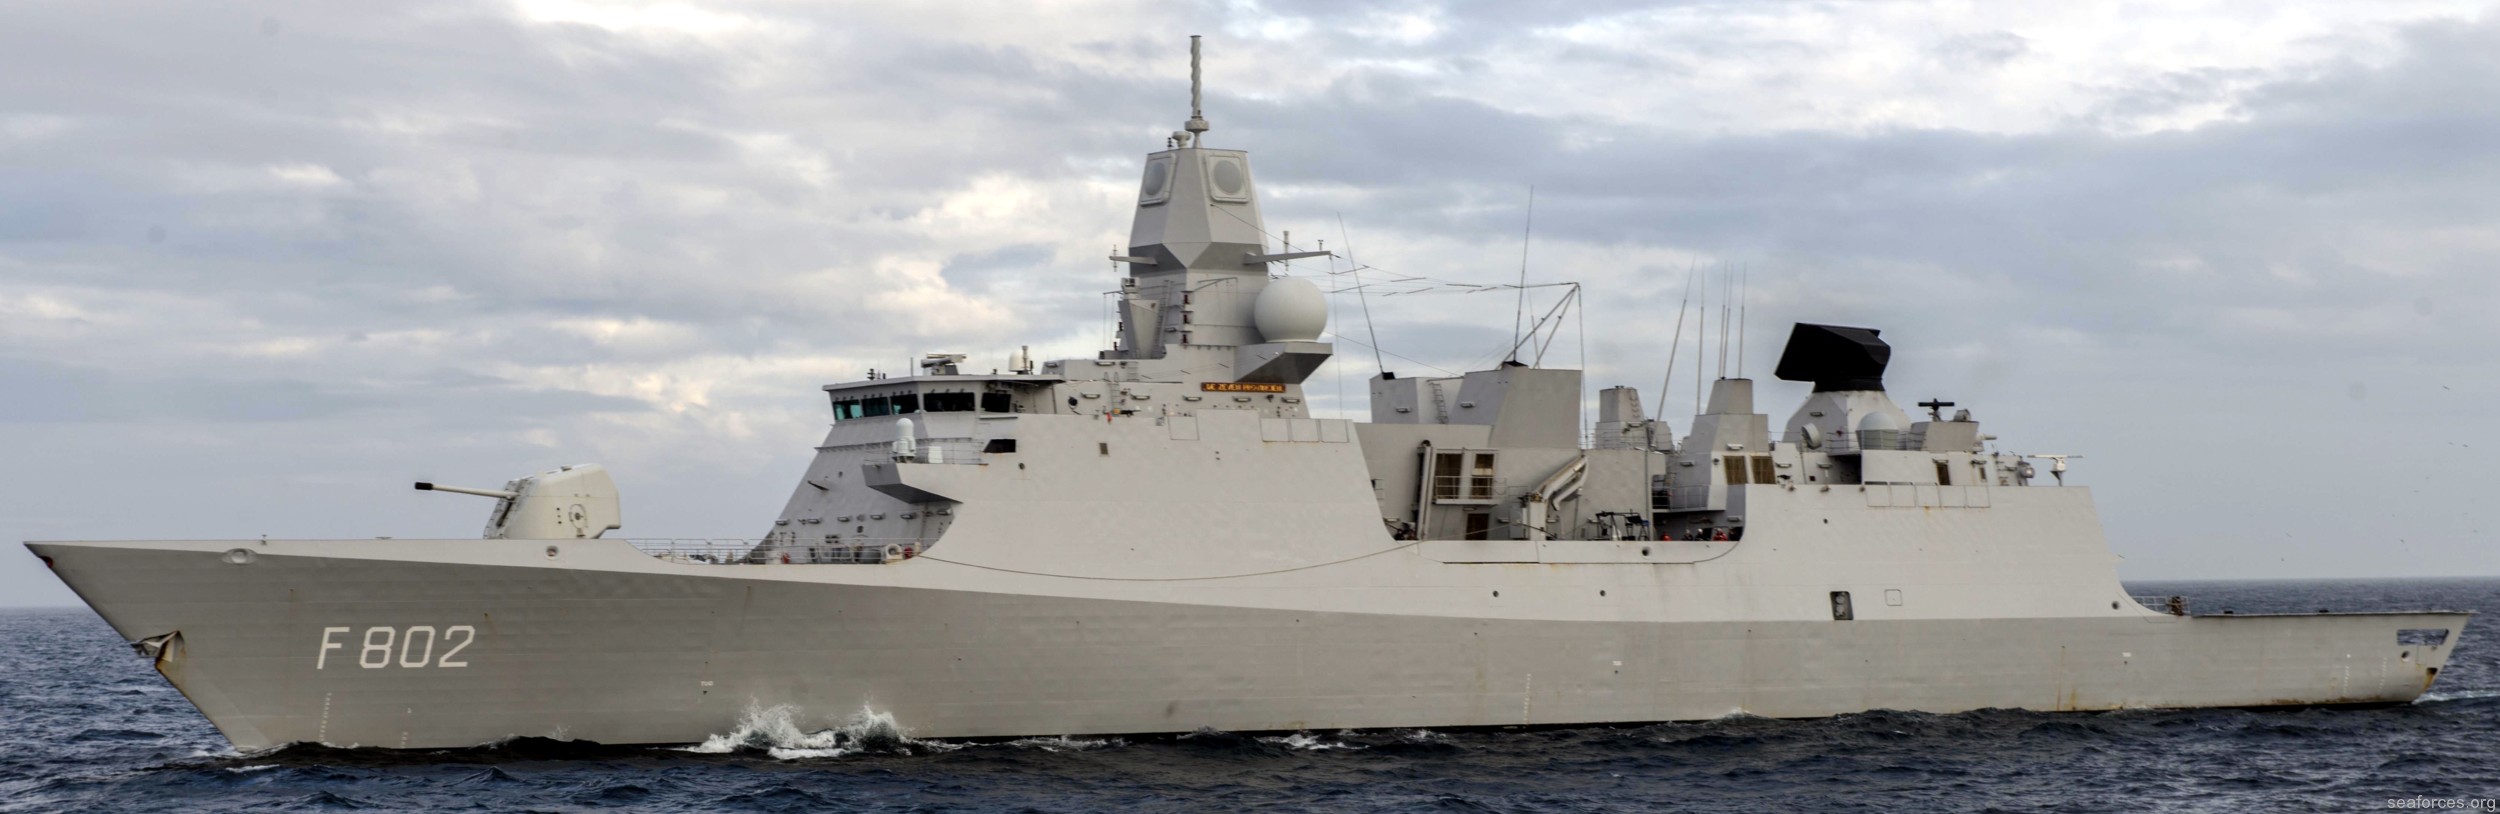 f-802 hnlms de zeven provincien guided missile frigate ffg royal netherlands navy 05 koninklijke marine